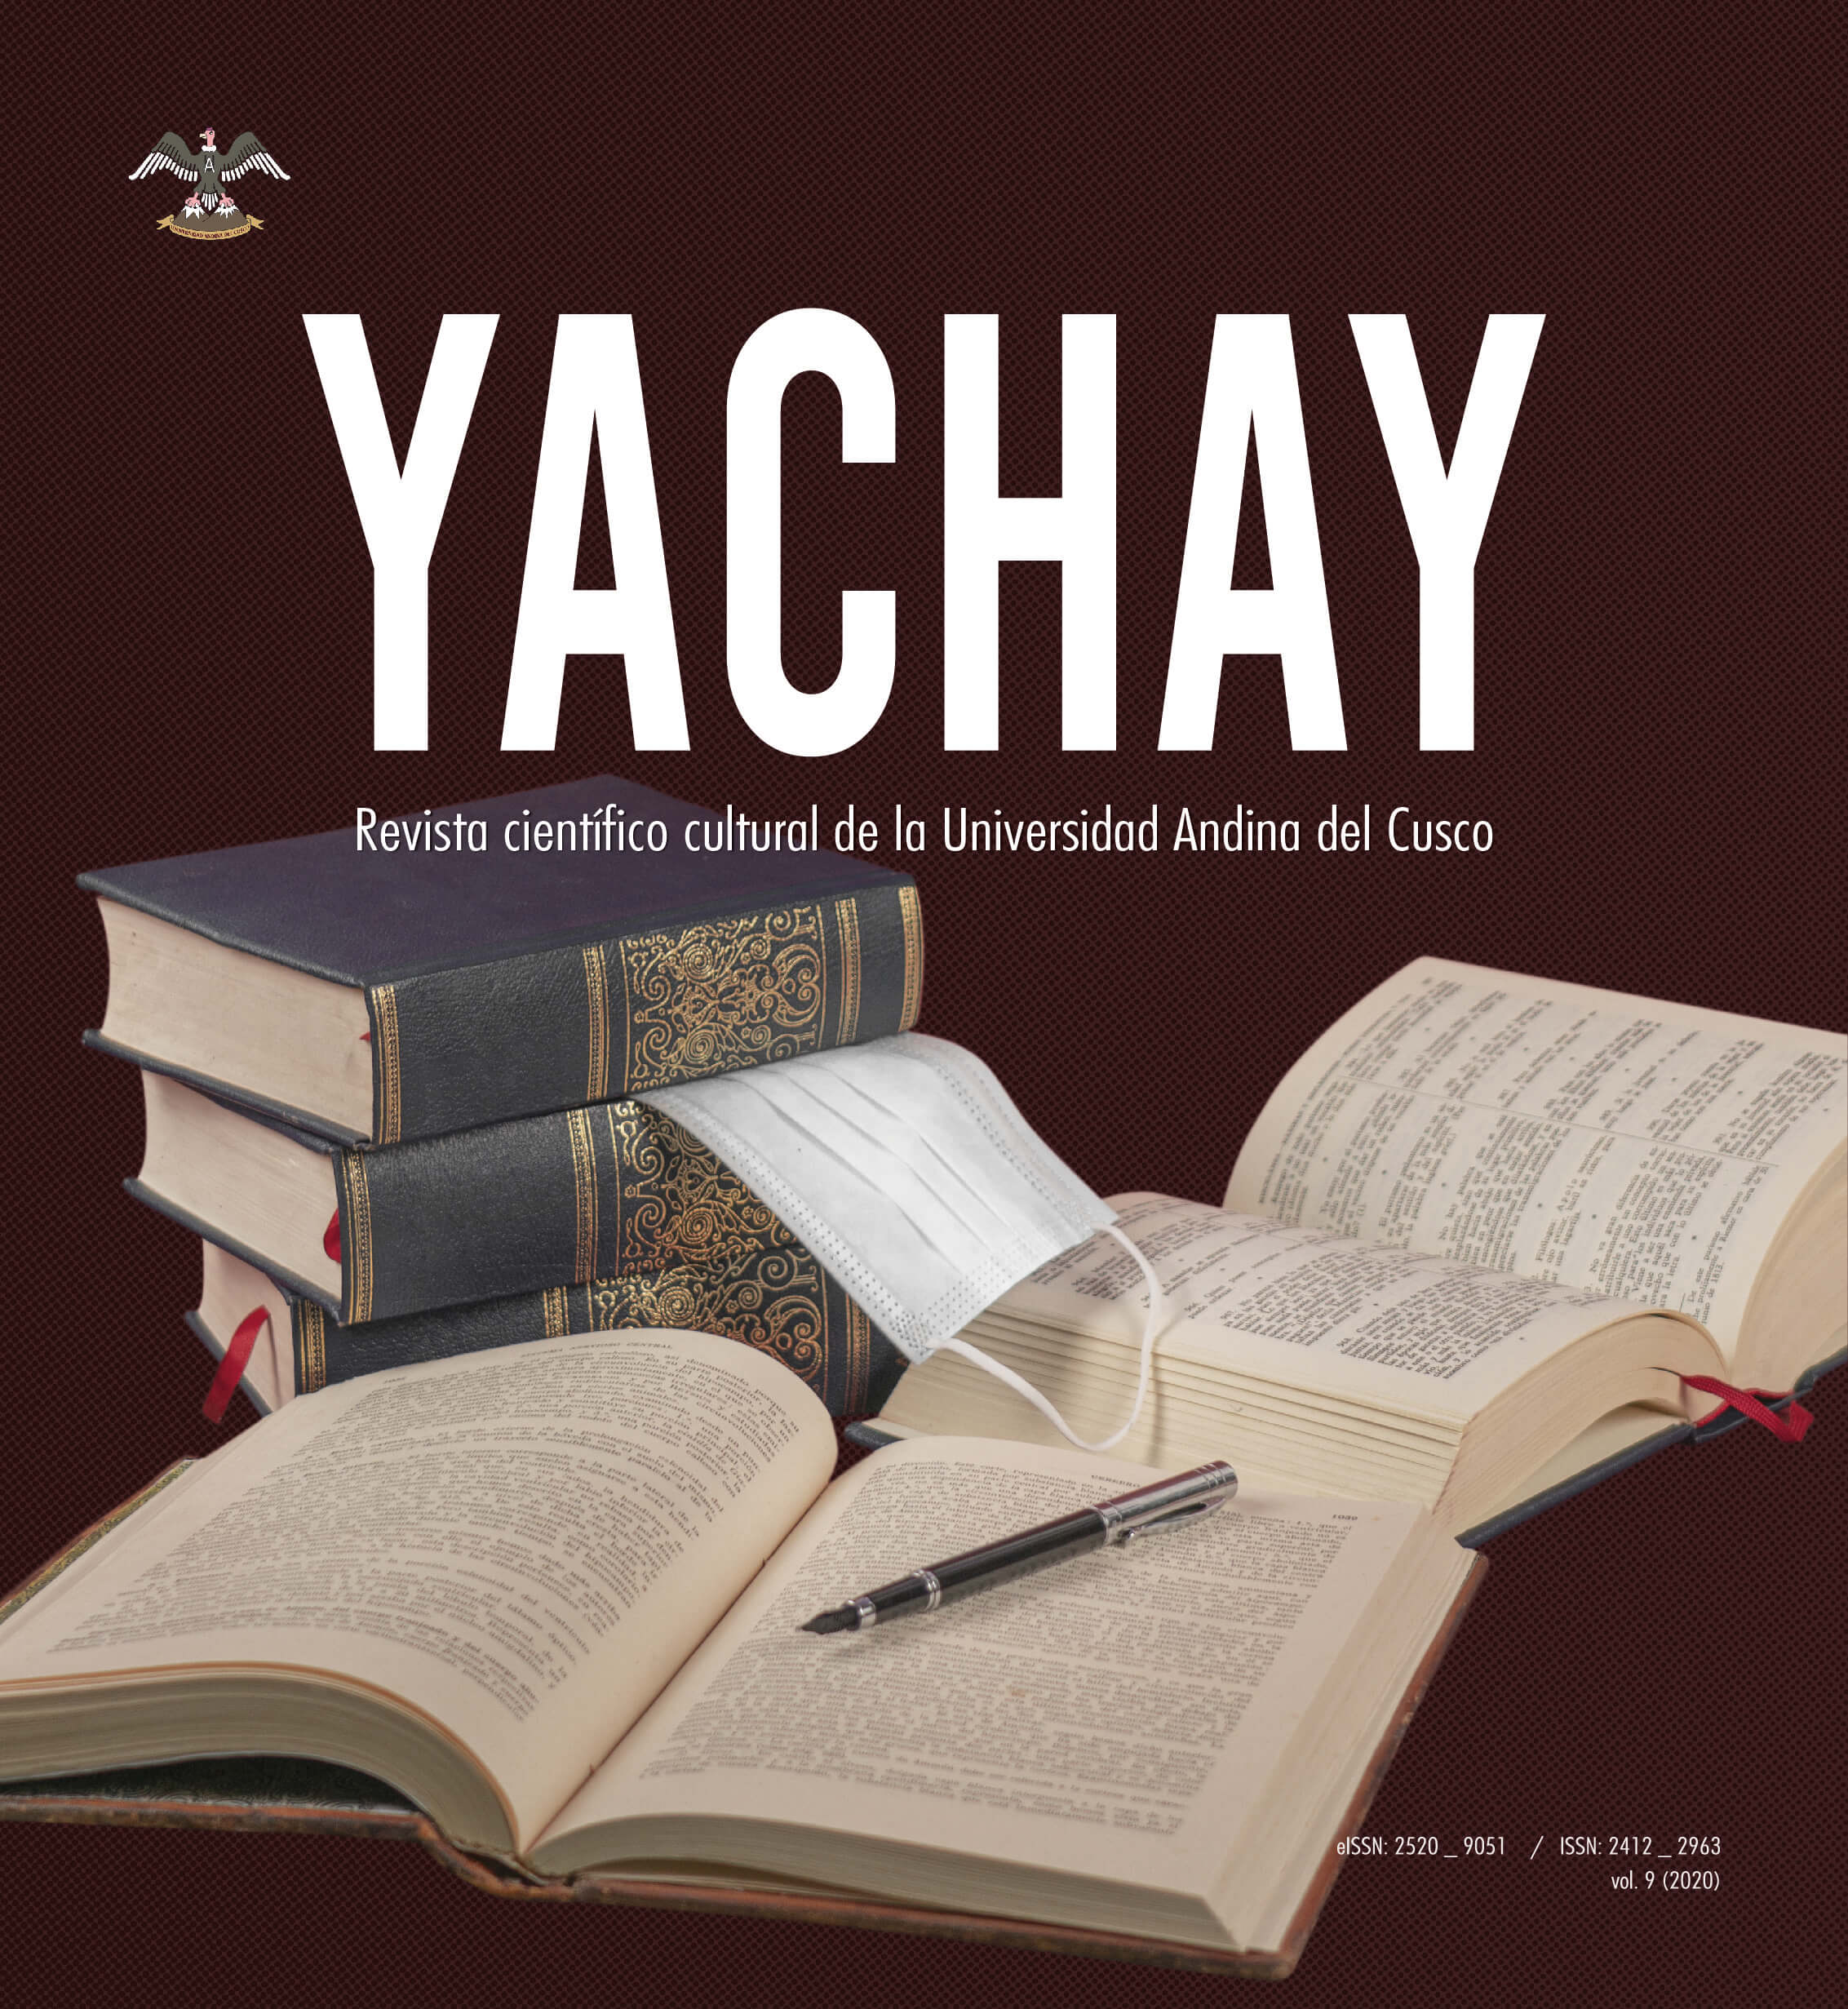 					Ver Vol. 9 Núm. 01 (2020): Yachay Revista científico cultural 2020
				